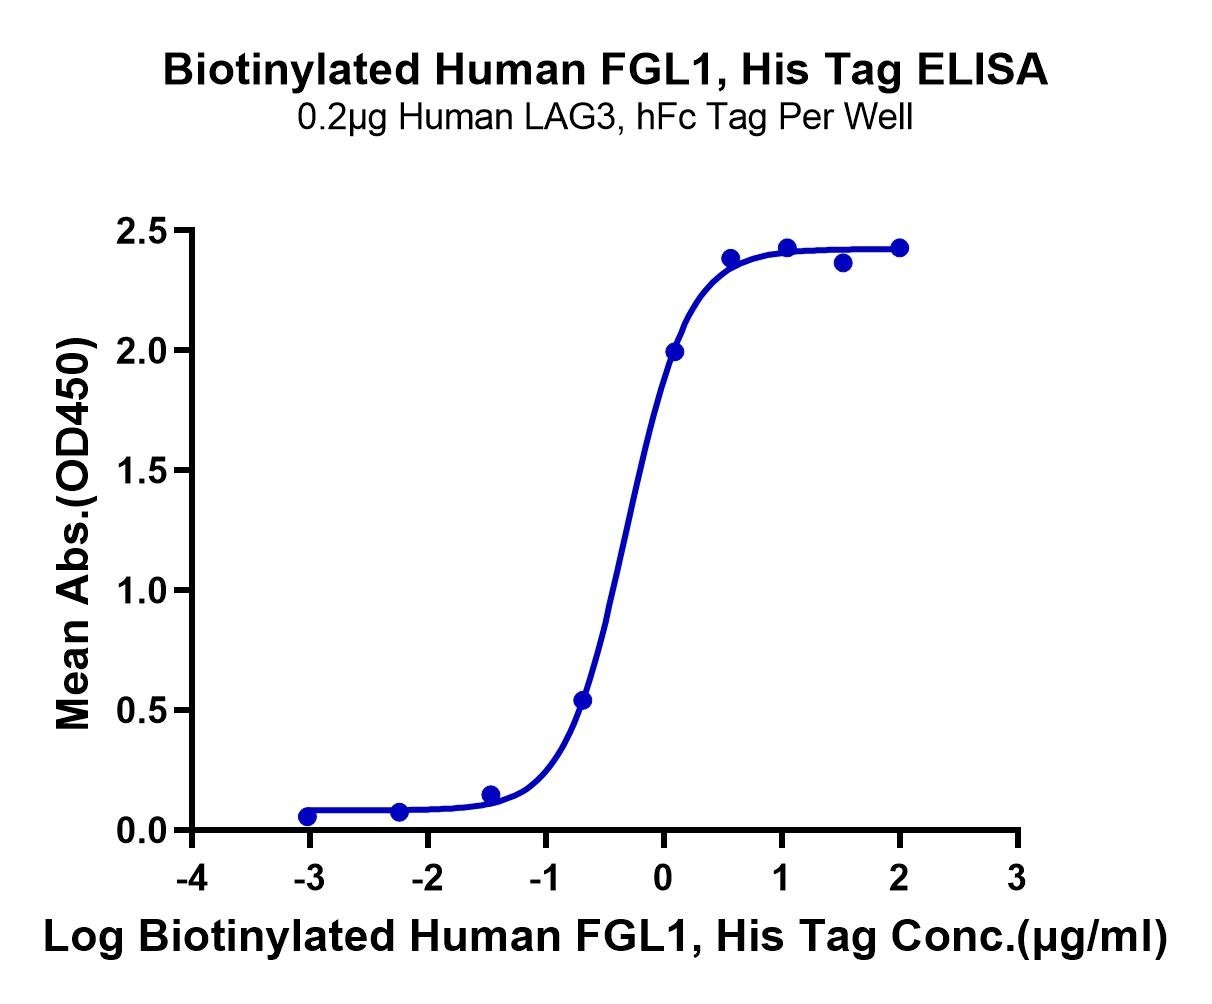 20230329162957 - Biotinylated Human FGL1 Protein, Accession: Q08830